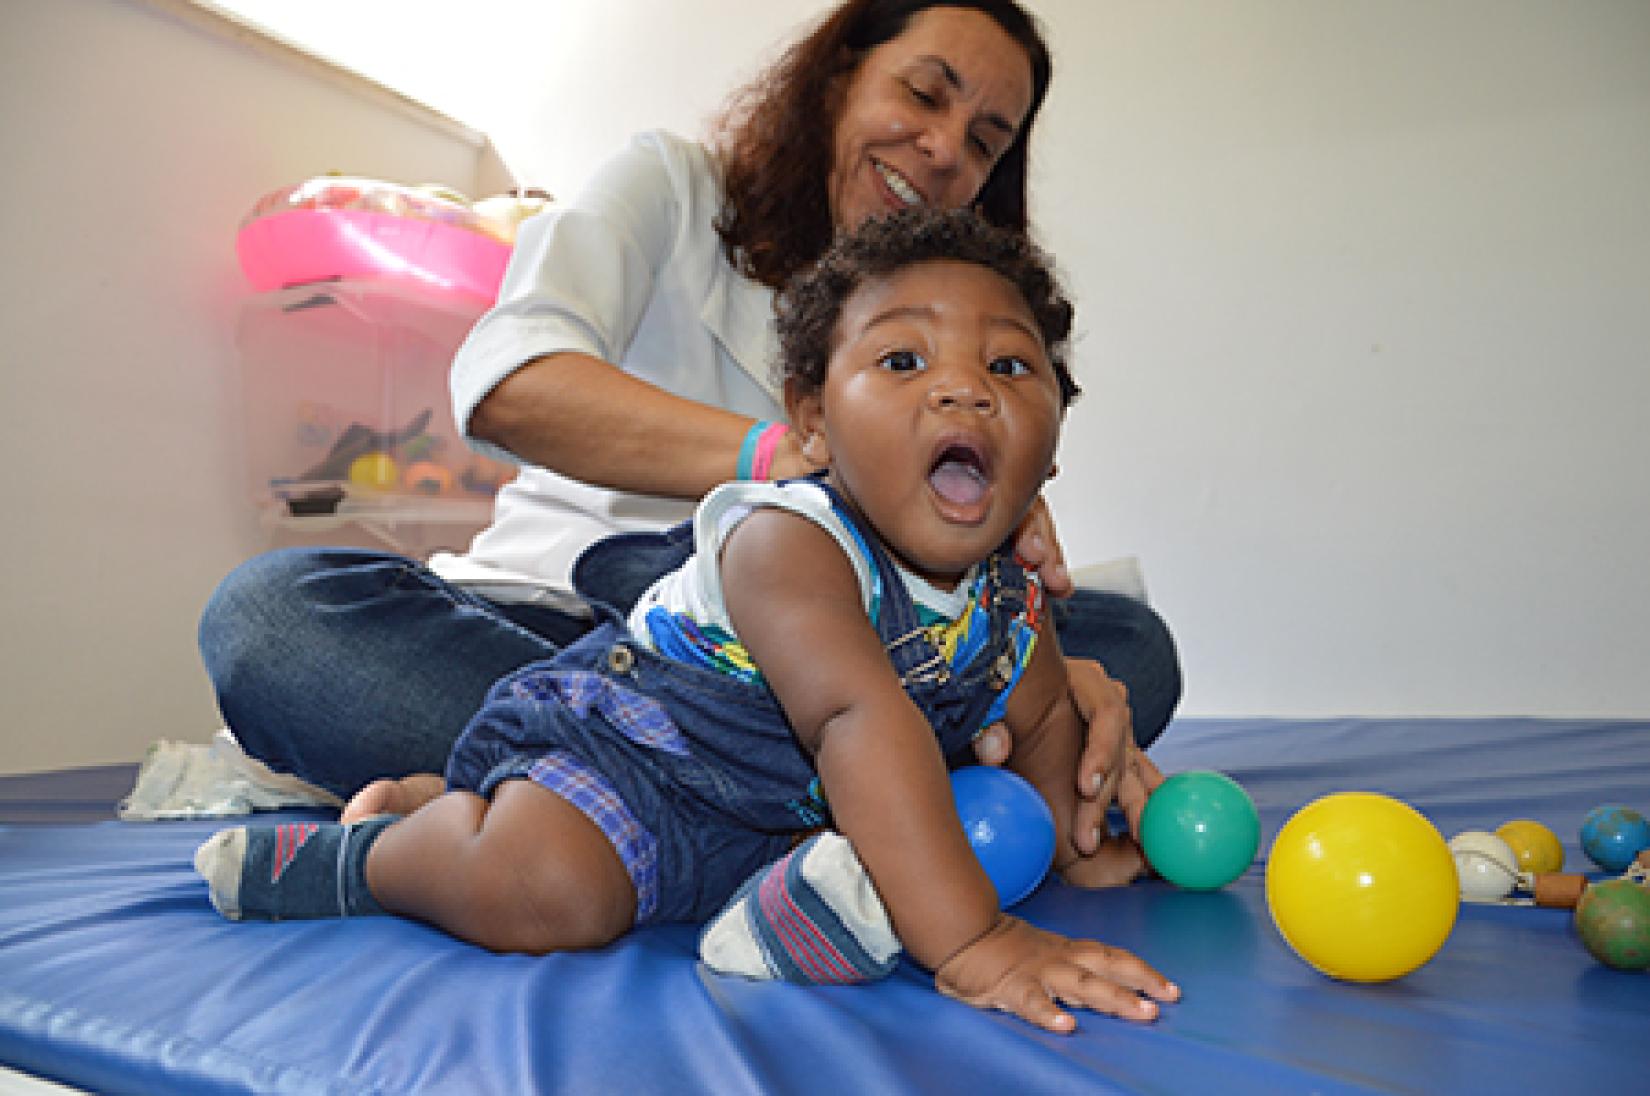 Atividades para estimular o desenvolvimento de crianças são oferecidas em instituto baiano. Foto: UNFPA Brasil / Tatiana Almeida